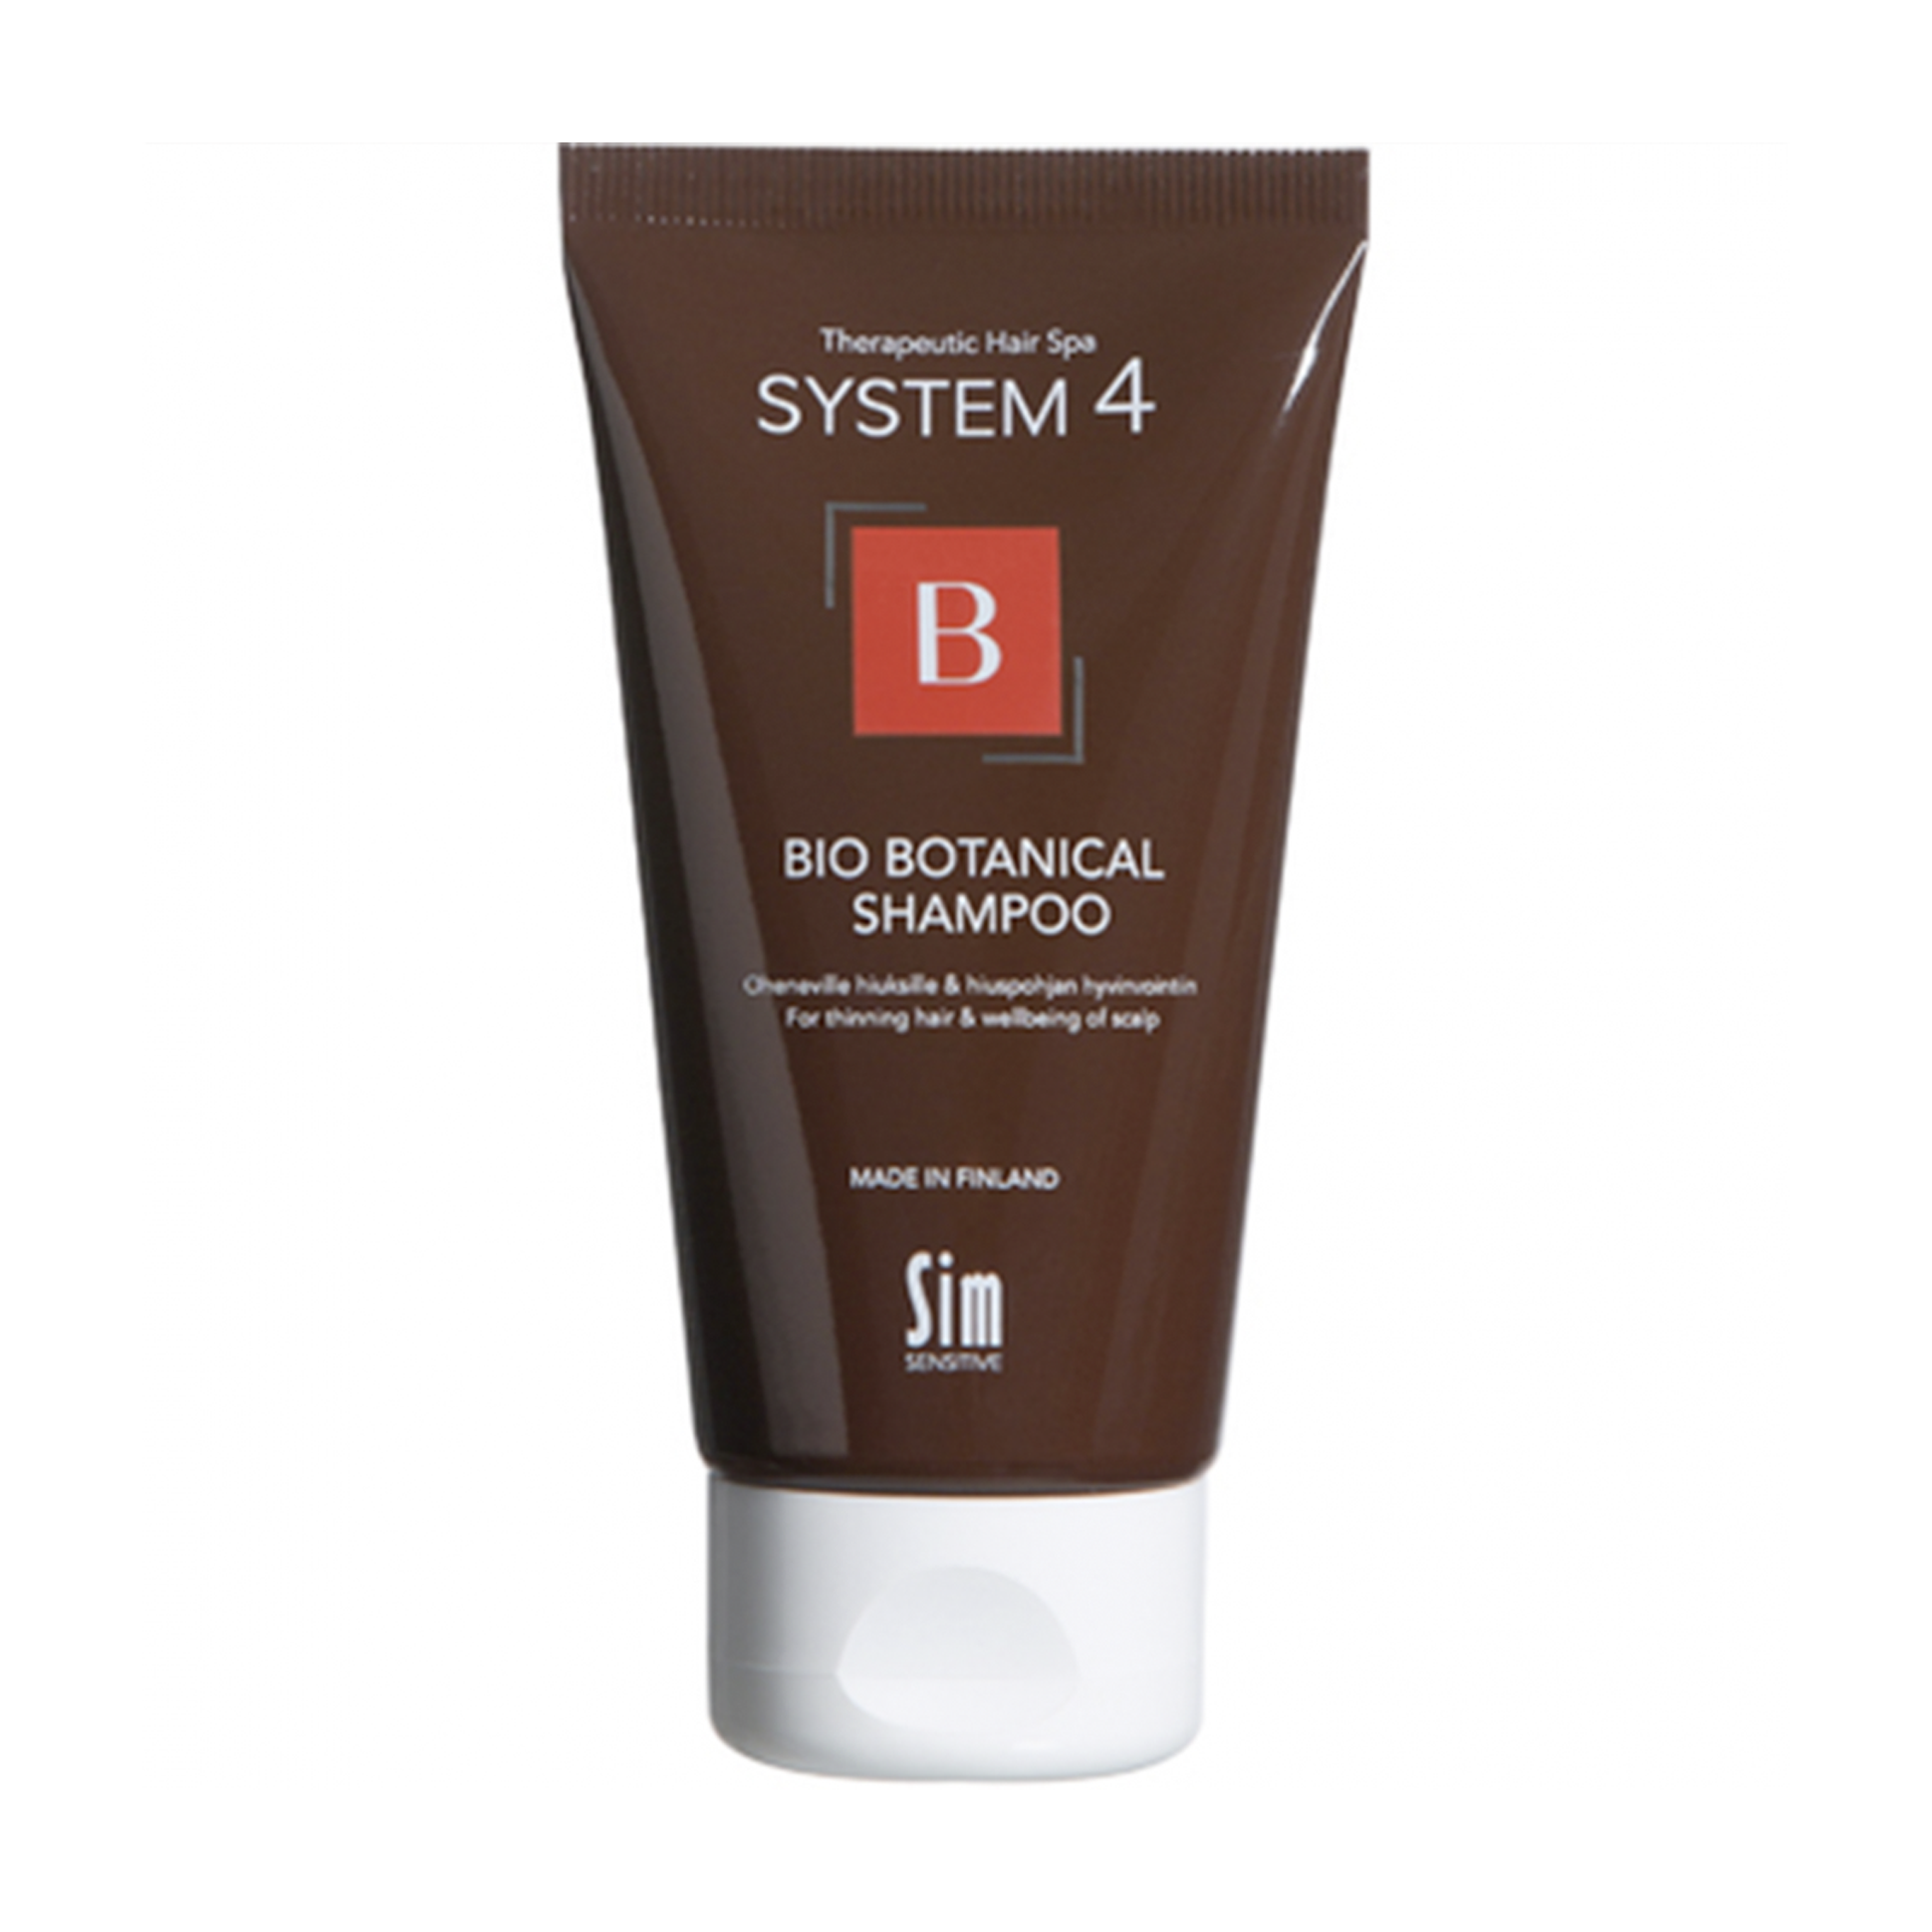 System 4 Bio Botanical Shampoo Sim Sensitive Біо ботанічний шампунь від випадіння волосся